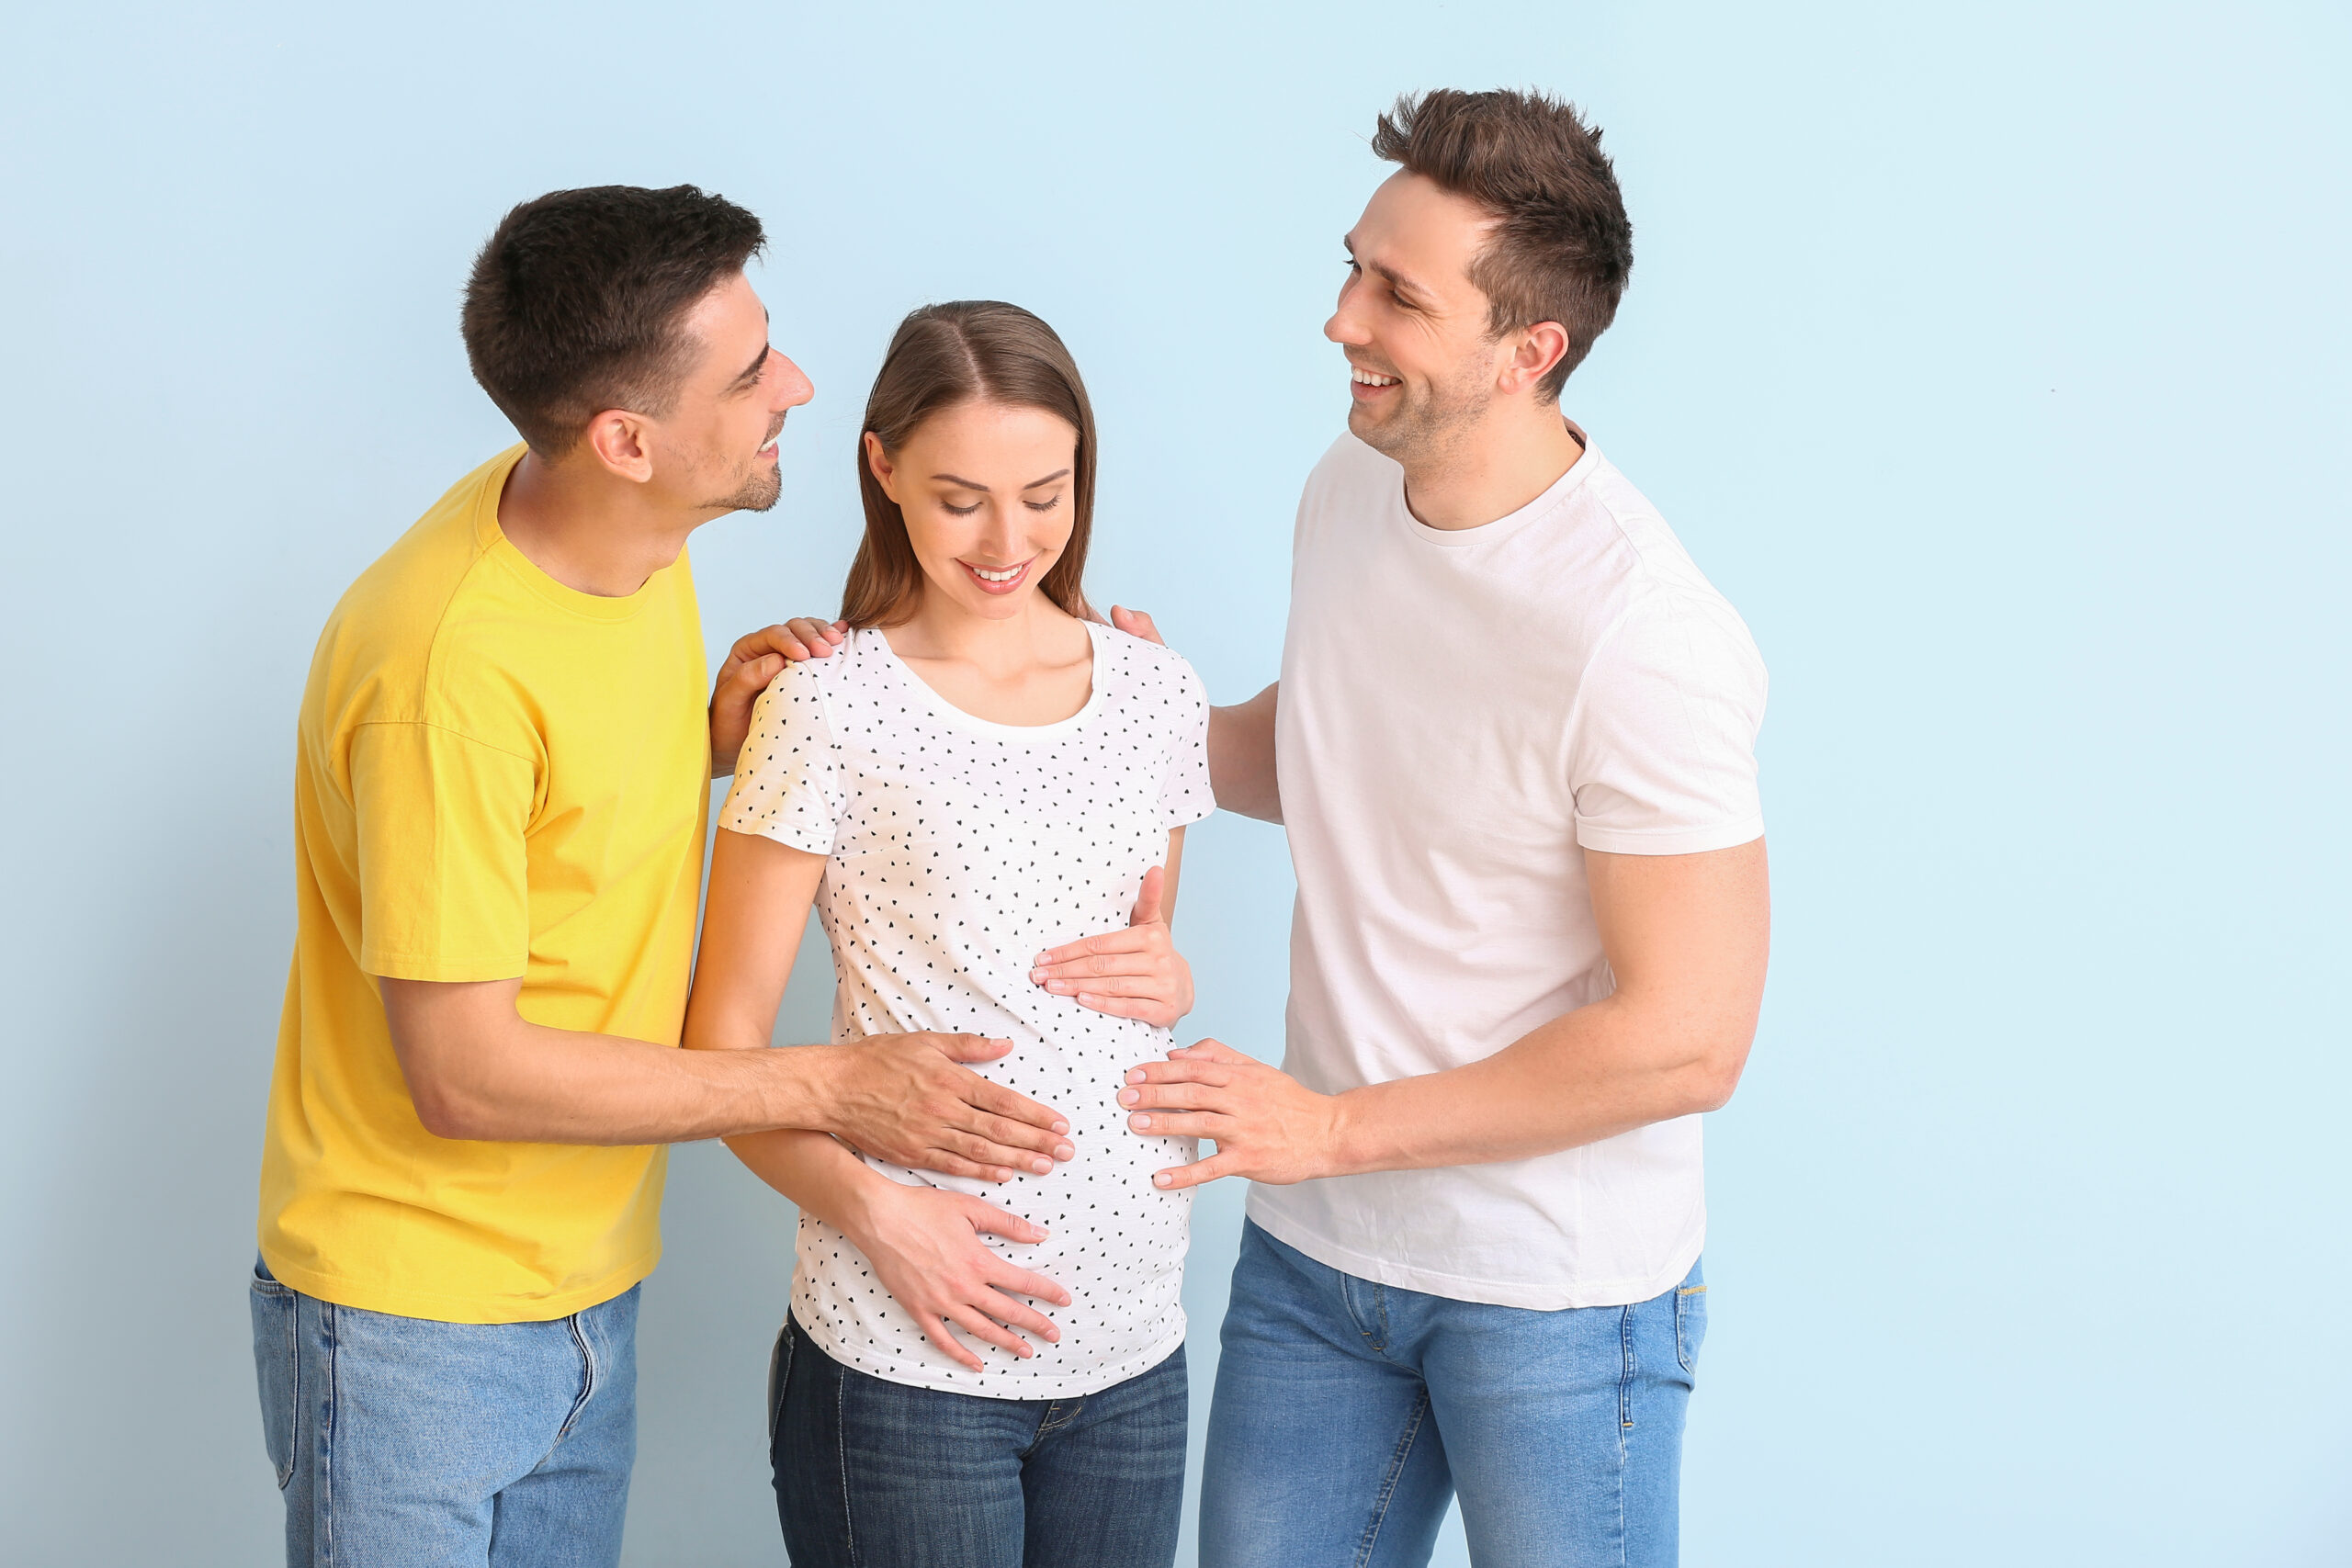 Twee mannen en een zwangere vrouw lachen samen met hun handen op haar buik, wat een draagmoederschapsovereenkomst voor LHBTQ-ouders suggereert.